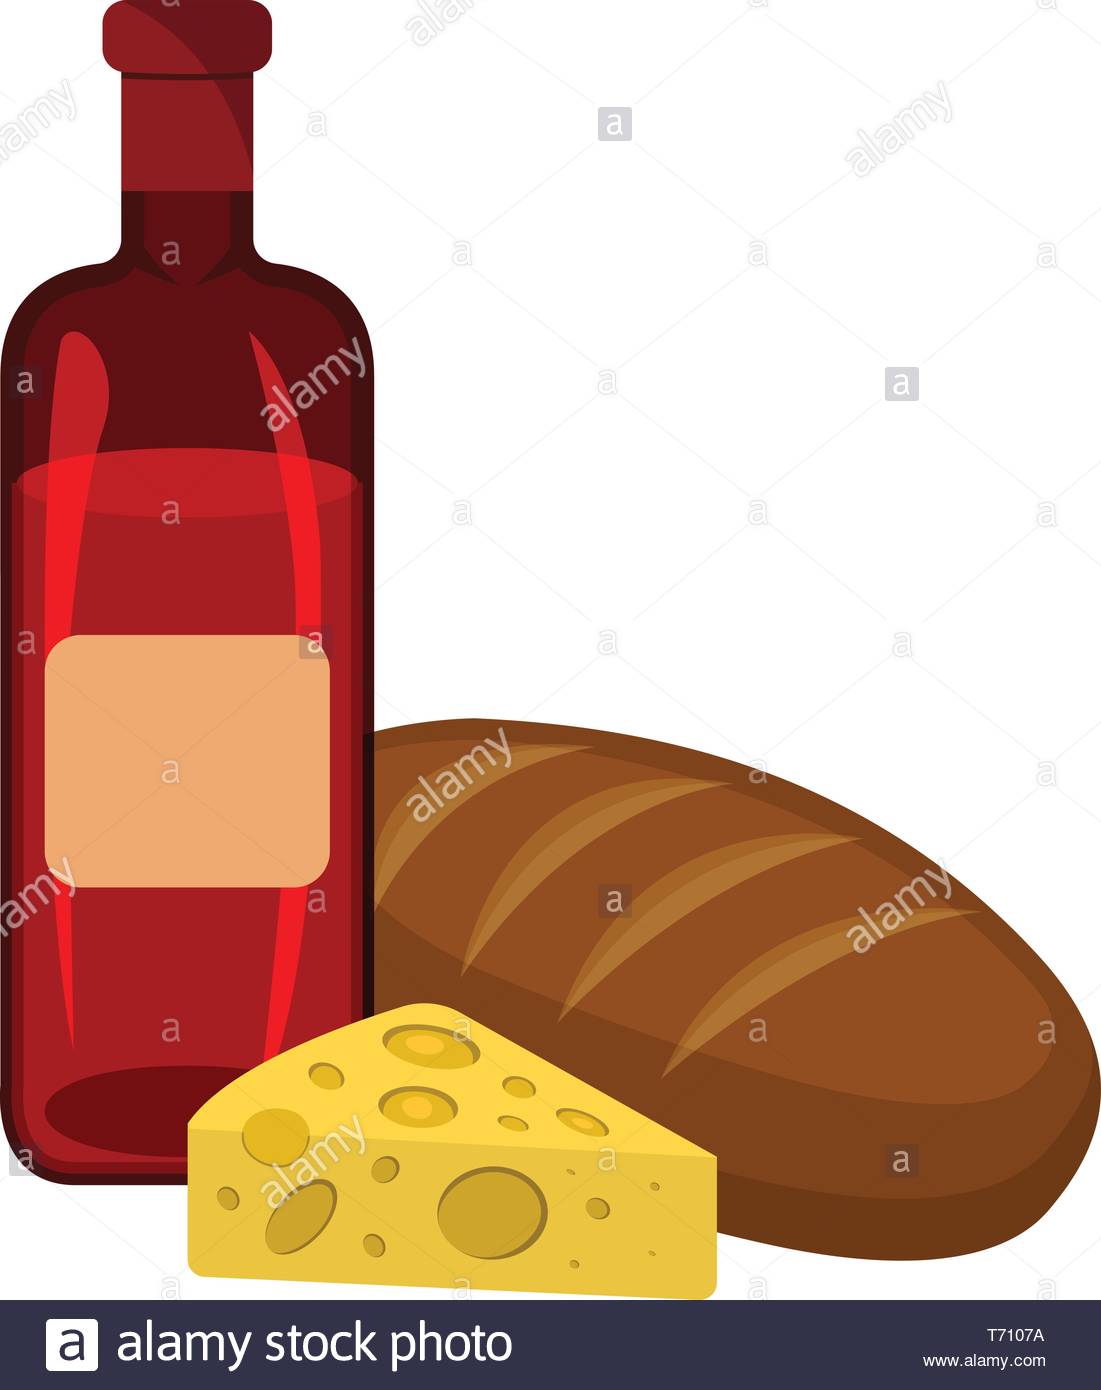 pain-fromage-vin-icone-letiquette-des-aliments-logo-et-bannieres-web-cartoon-vector-illustrati...jpg